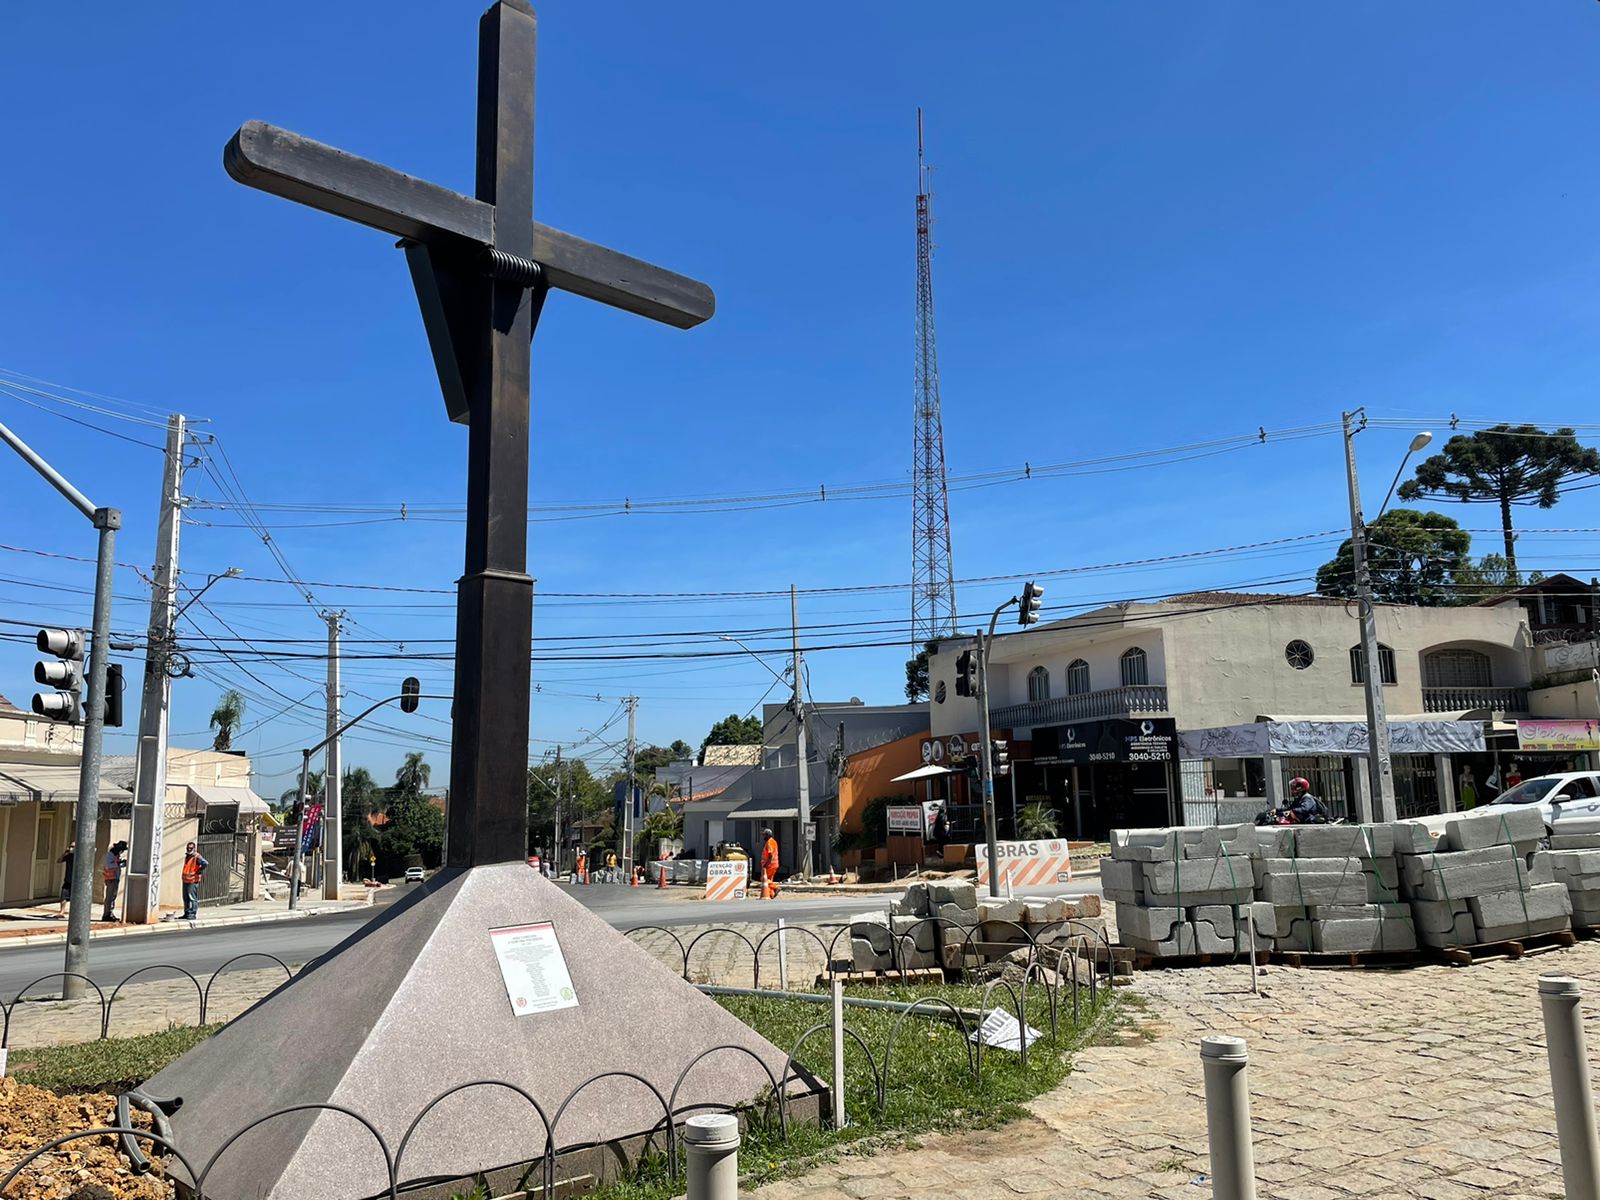  Comerciantes “perdem” estacionamento com obras na Cruz do Pilarzinho